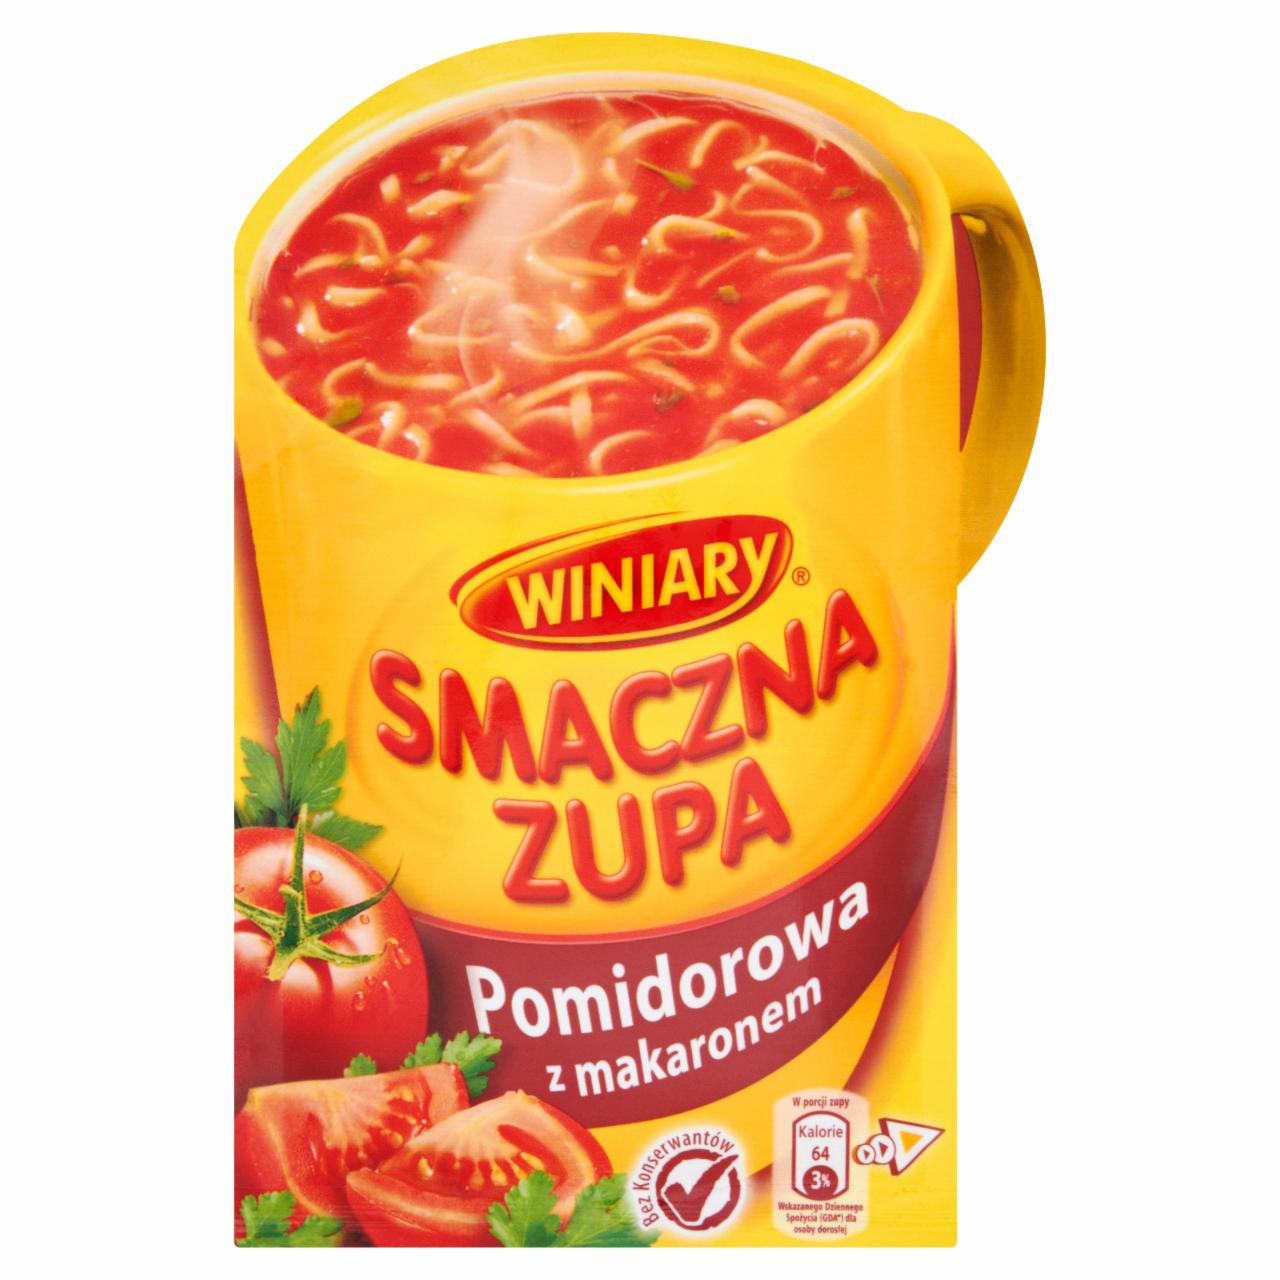 Zdjęcia - Winiary Smaczna Zupa Pomidorowa z makaronem 18 g